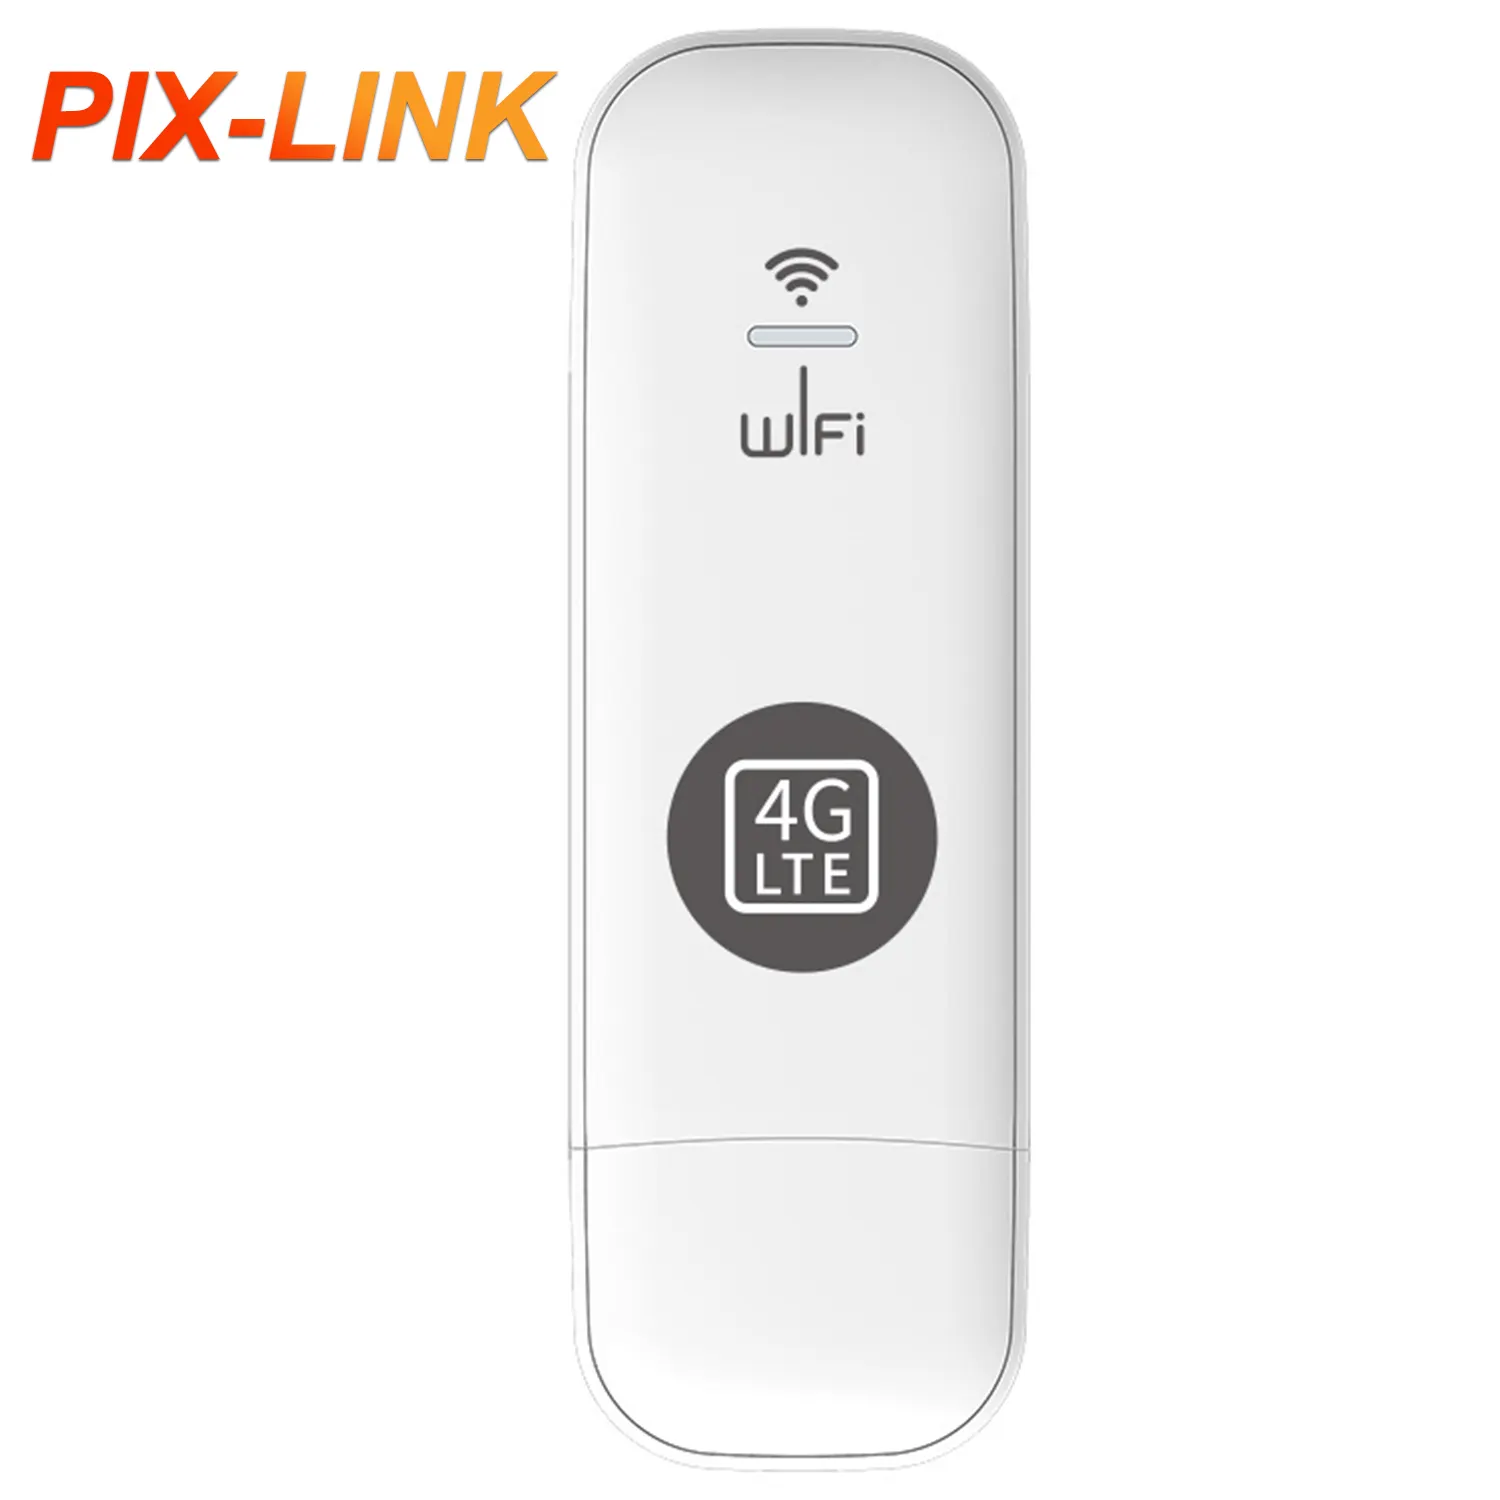 PIX-LINKグローバル4 gUSBWi-Fiモバイル工場価格lteワイヤレスルーターwifi WingleホットスポットLTEUsbモデムインターネットポケットWifiカード